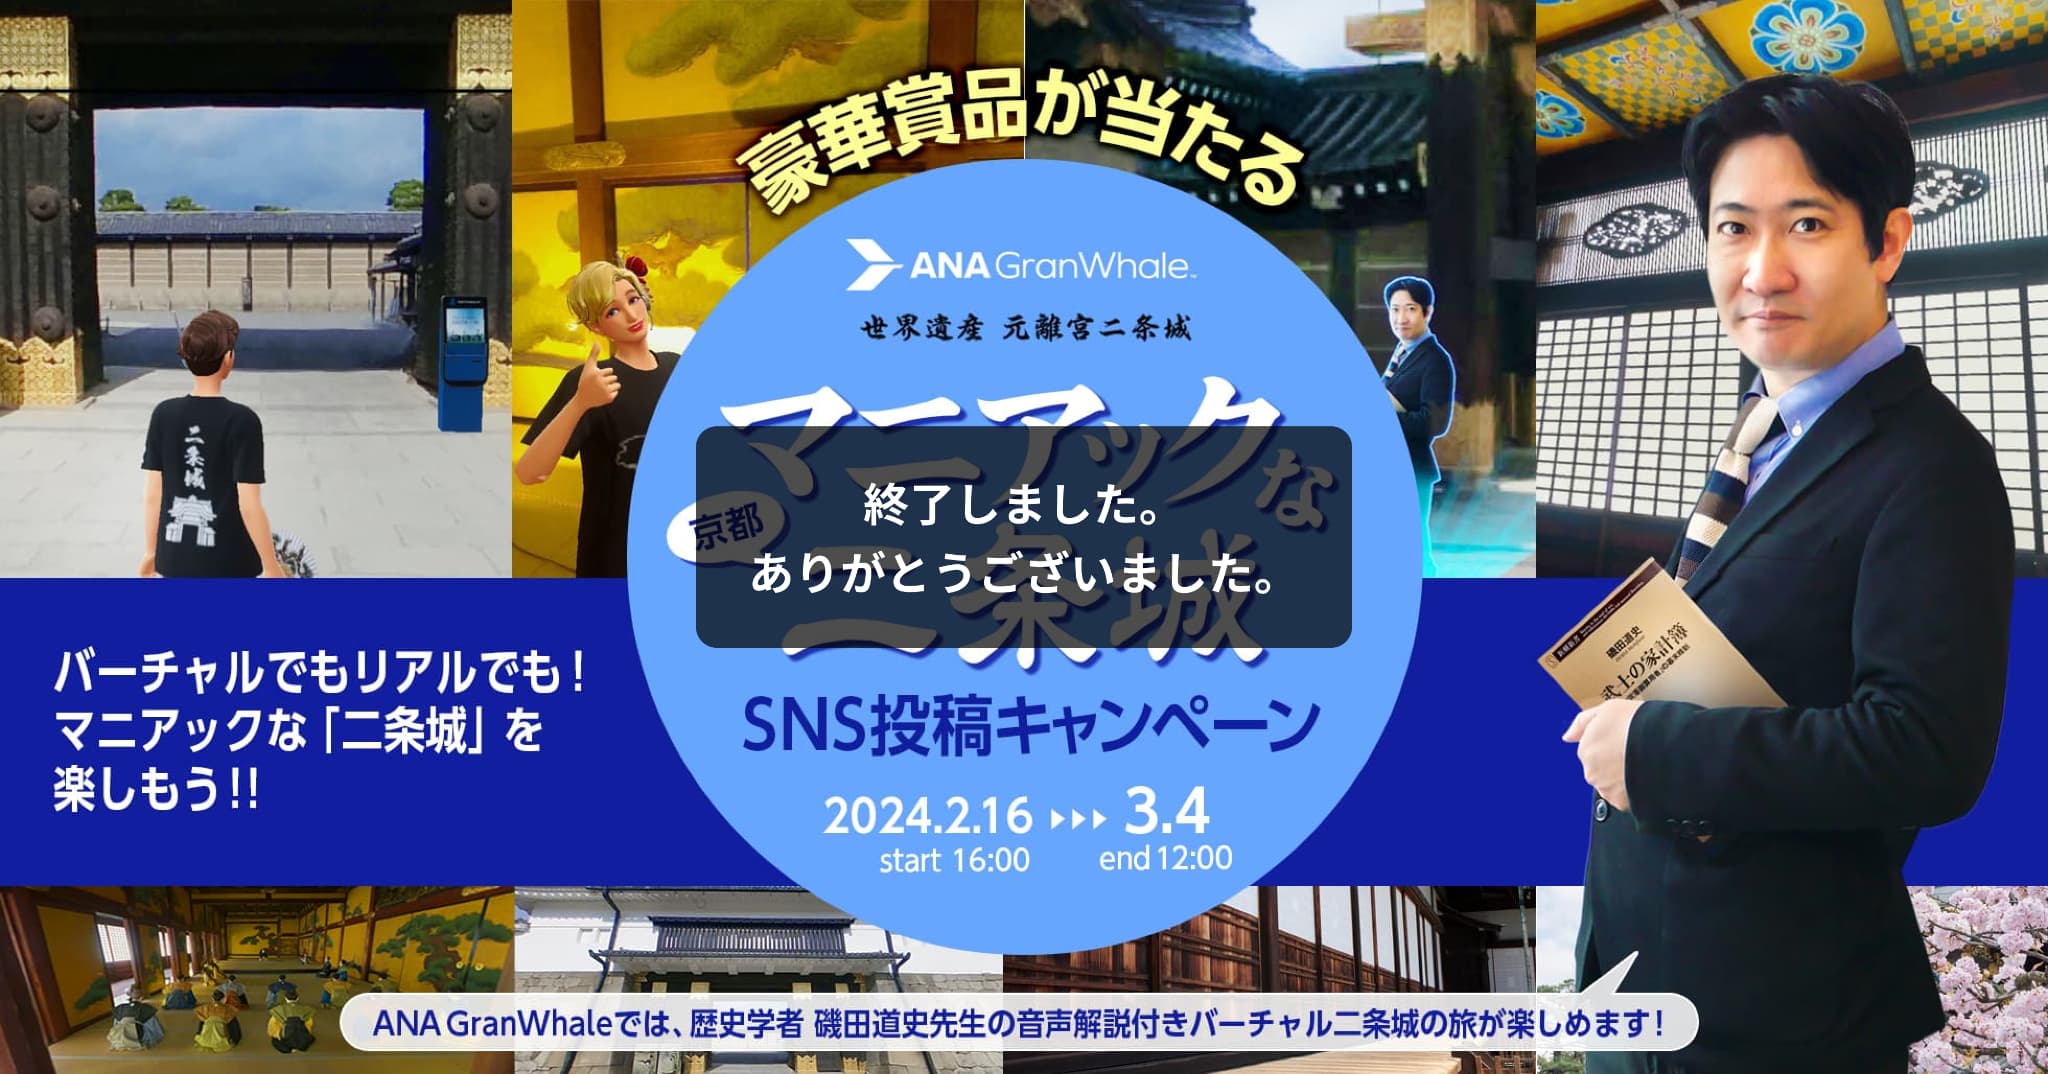 マニアックな二条城 SNS投稿キャンペーン 2024.2.16 start 16:00 ～ 3.4 end 12:00